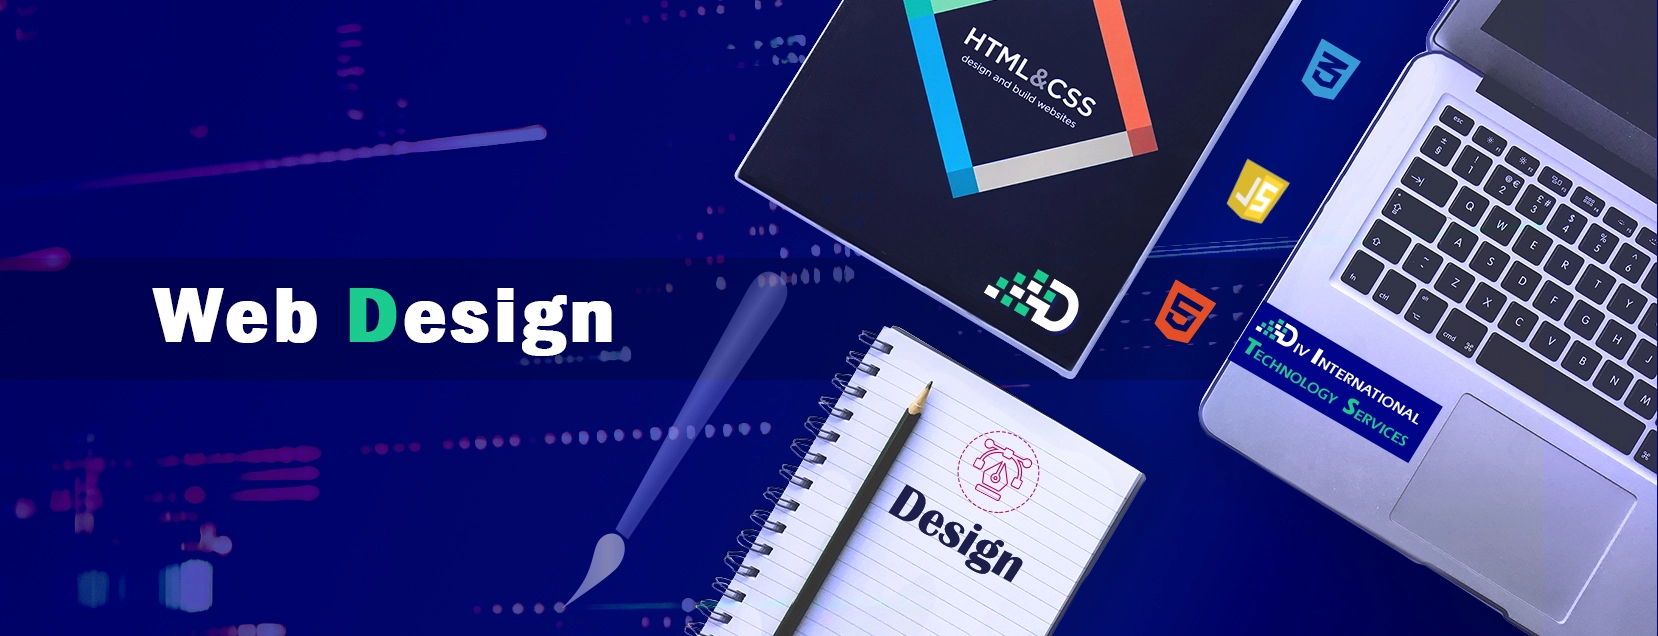 webdesign-bannerimage